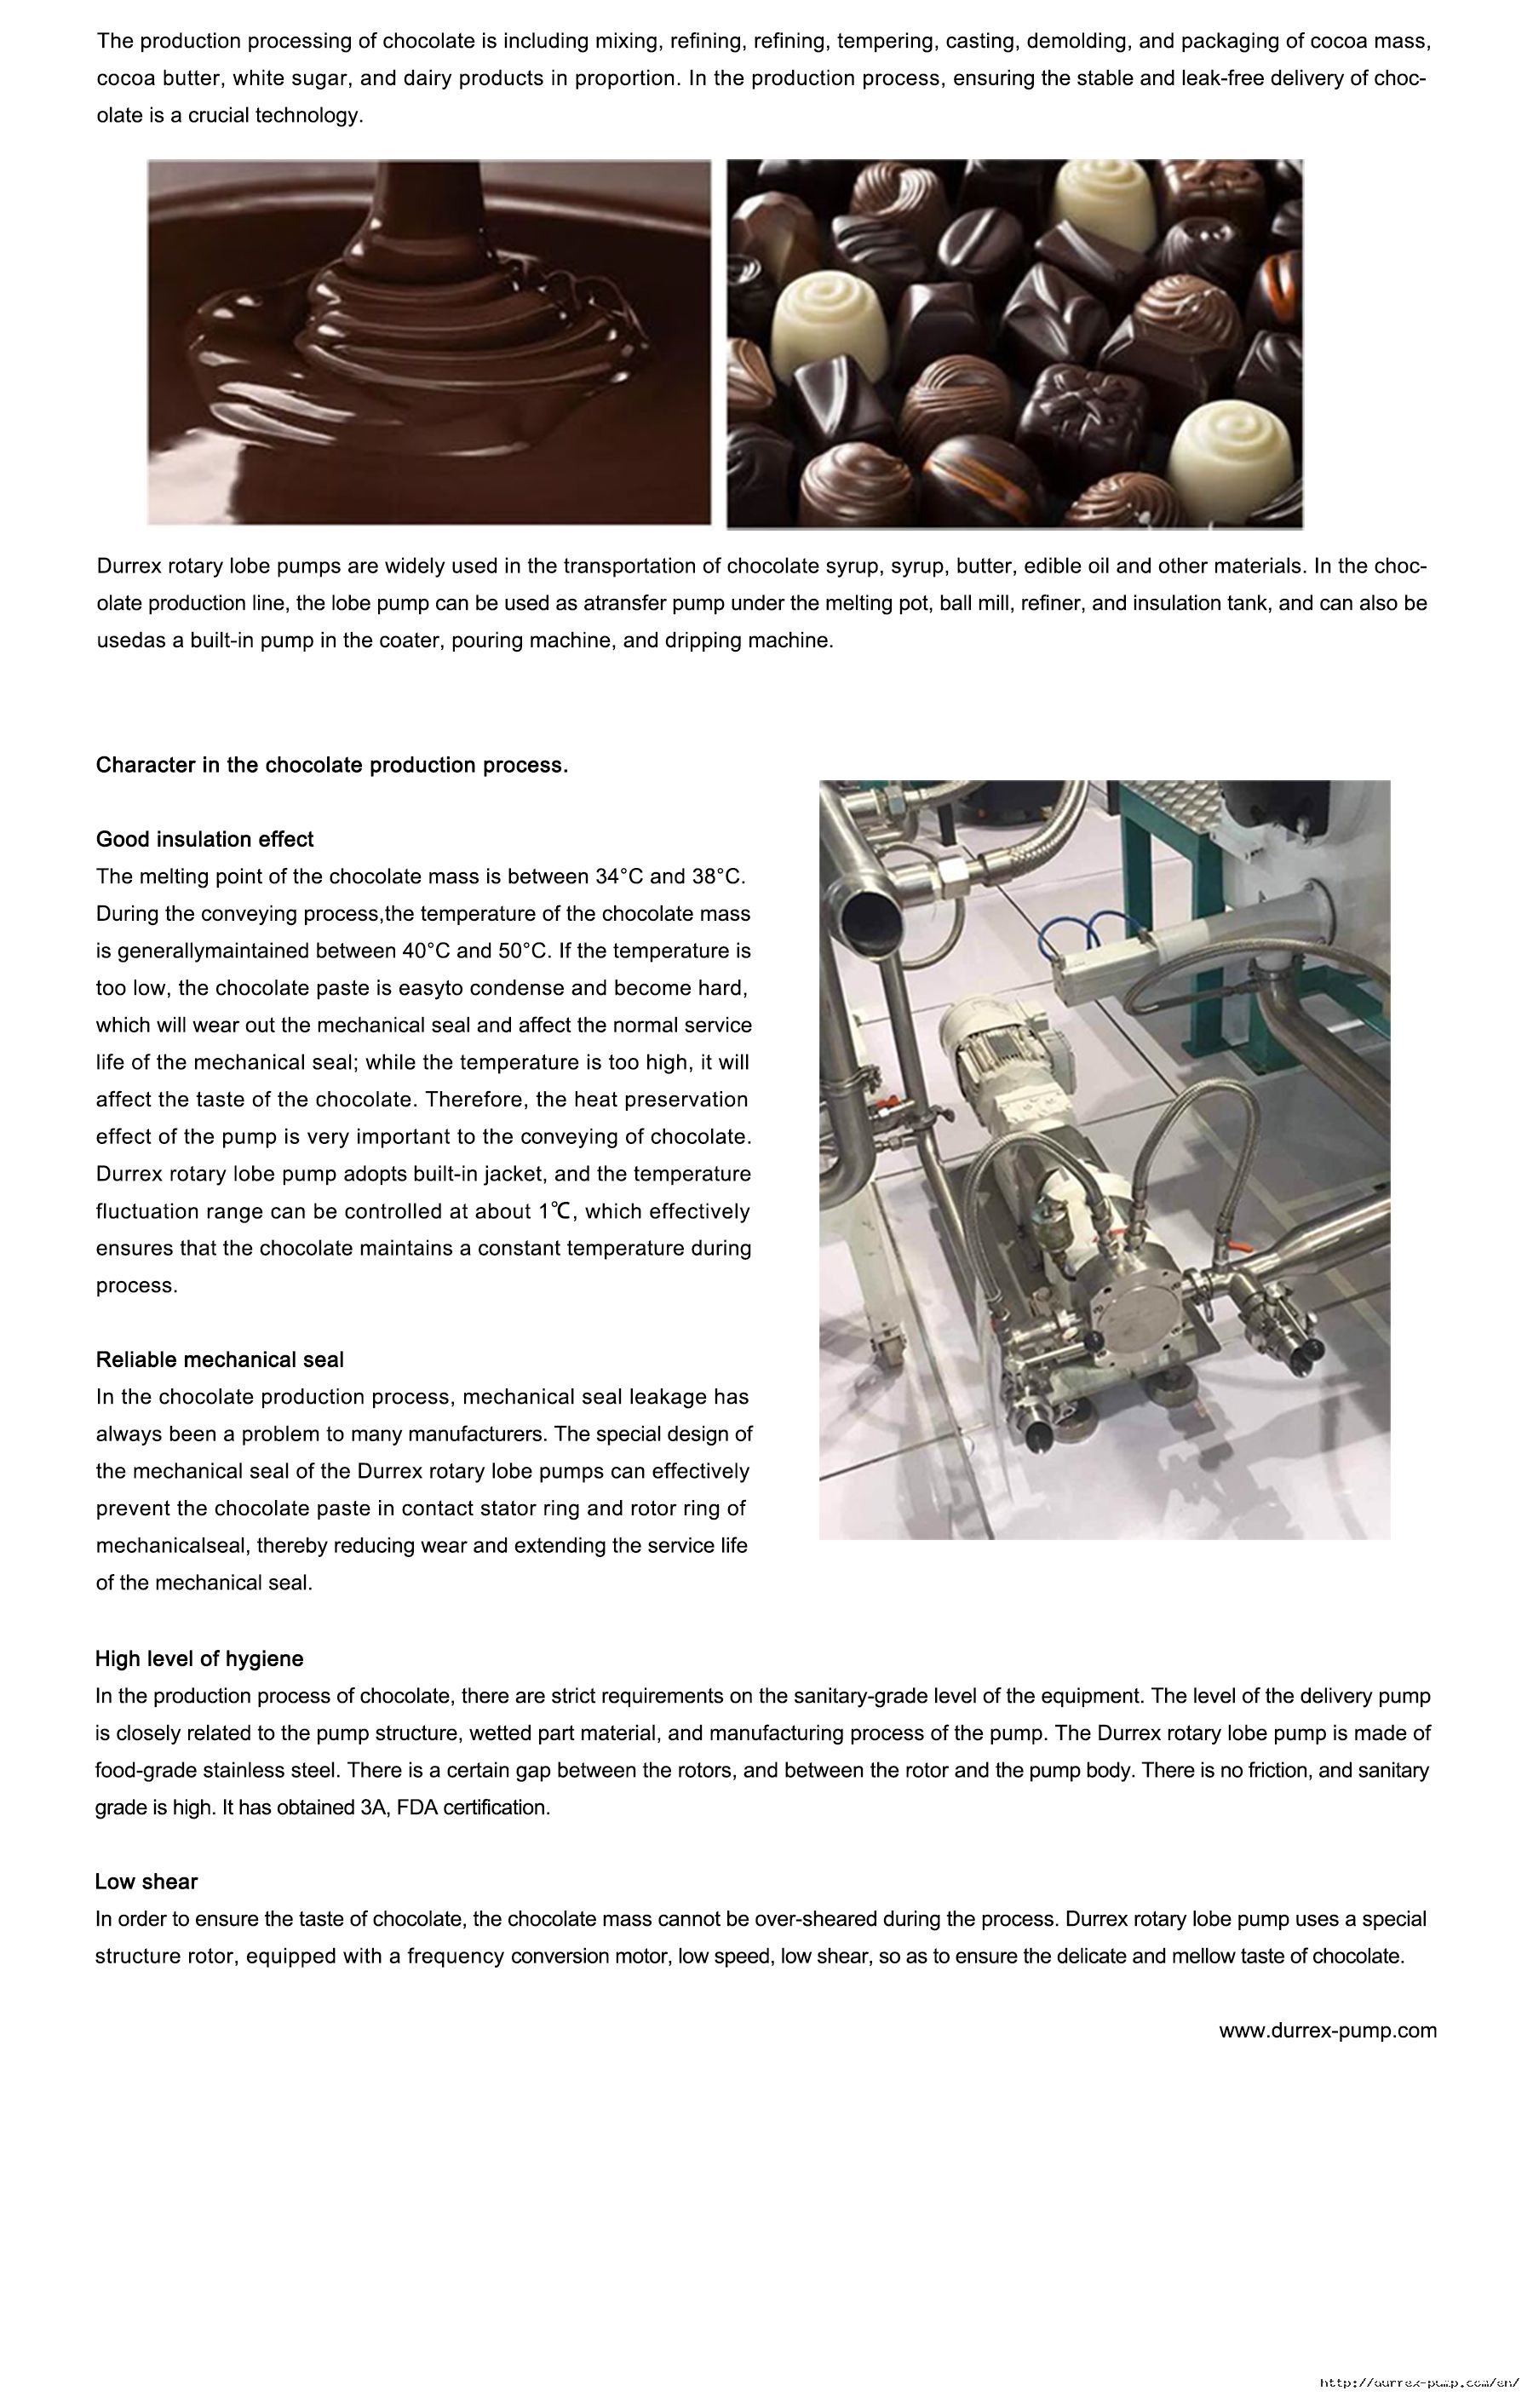 2转子泵在巧克力生产工艺中的应用RE1008.jpg